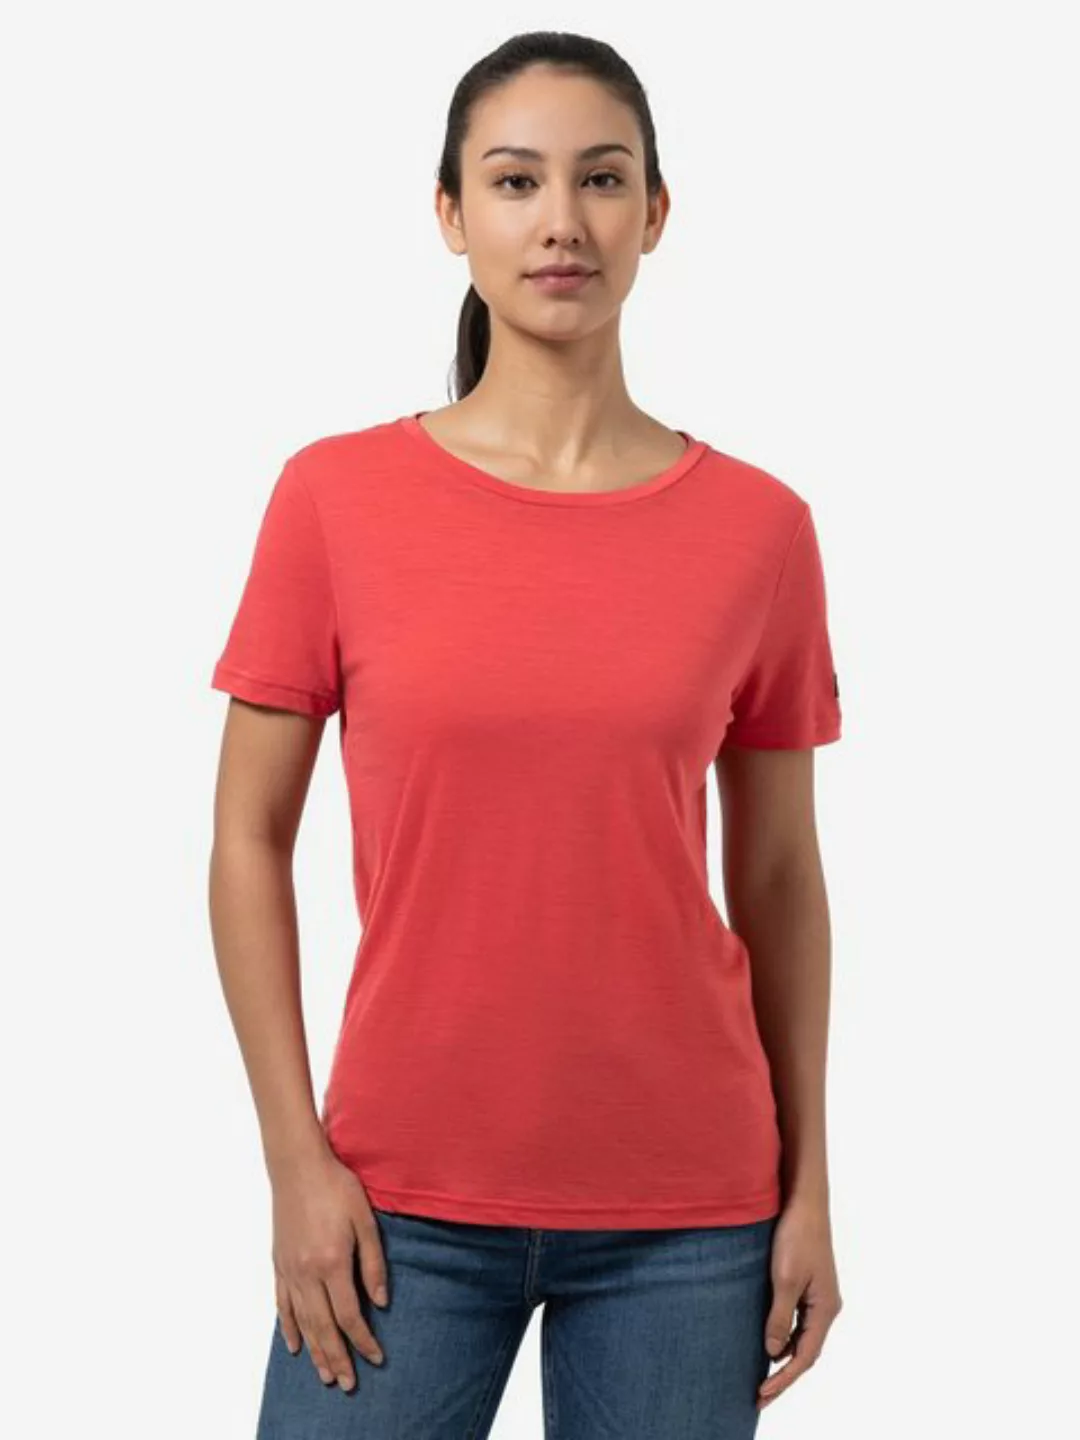 SUPER.NATURAL T-Shirt für Damen, Merino THE ESSENTIAL atmungsaktiv, casual günstig online kaufen